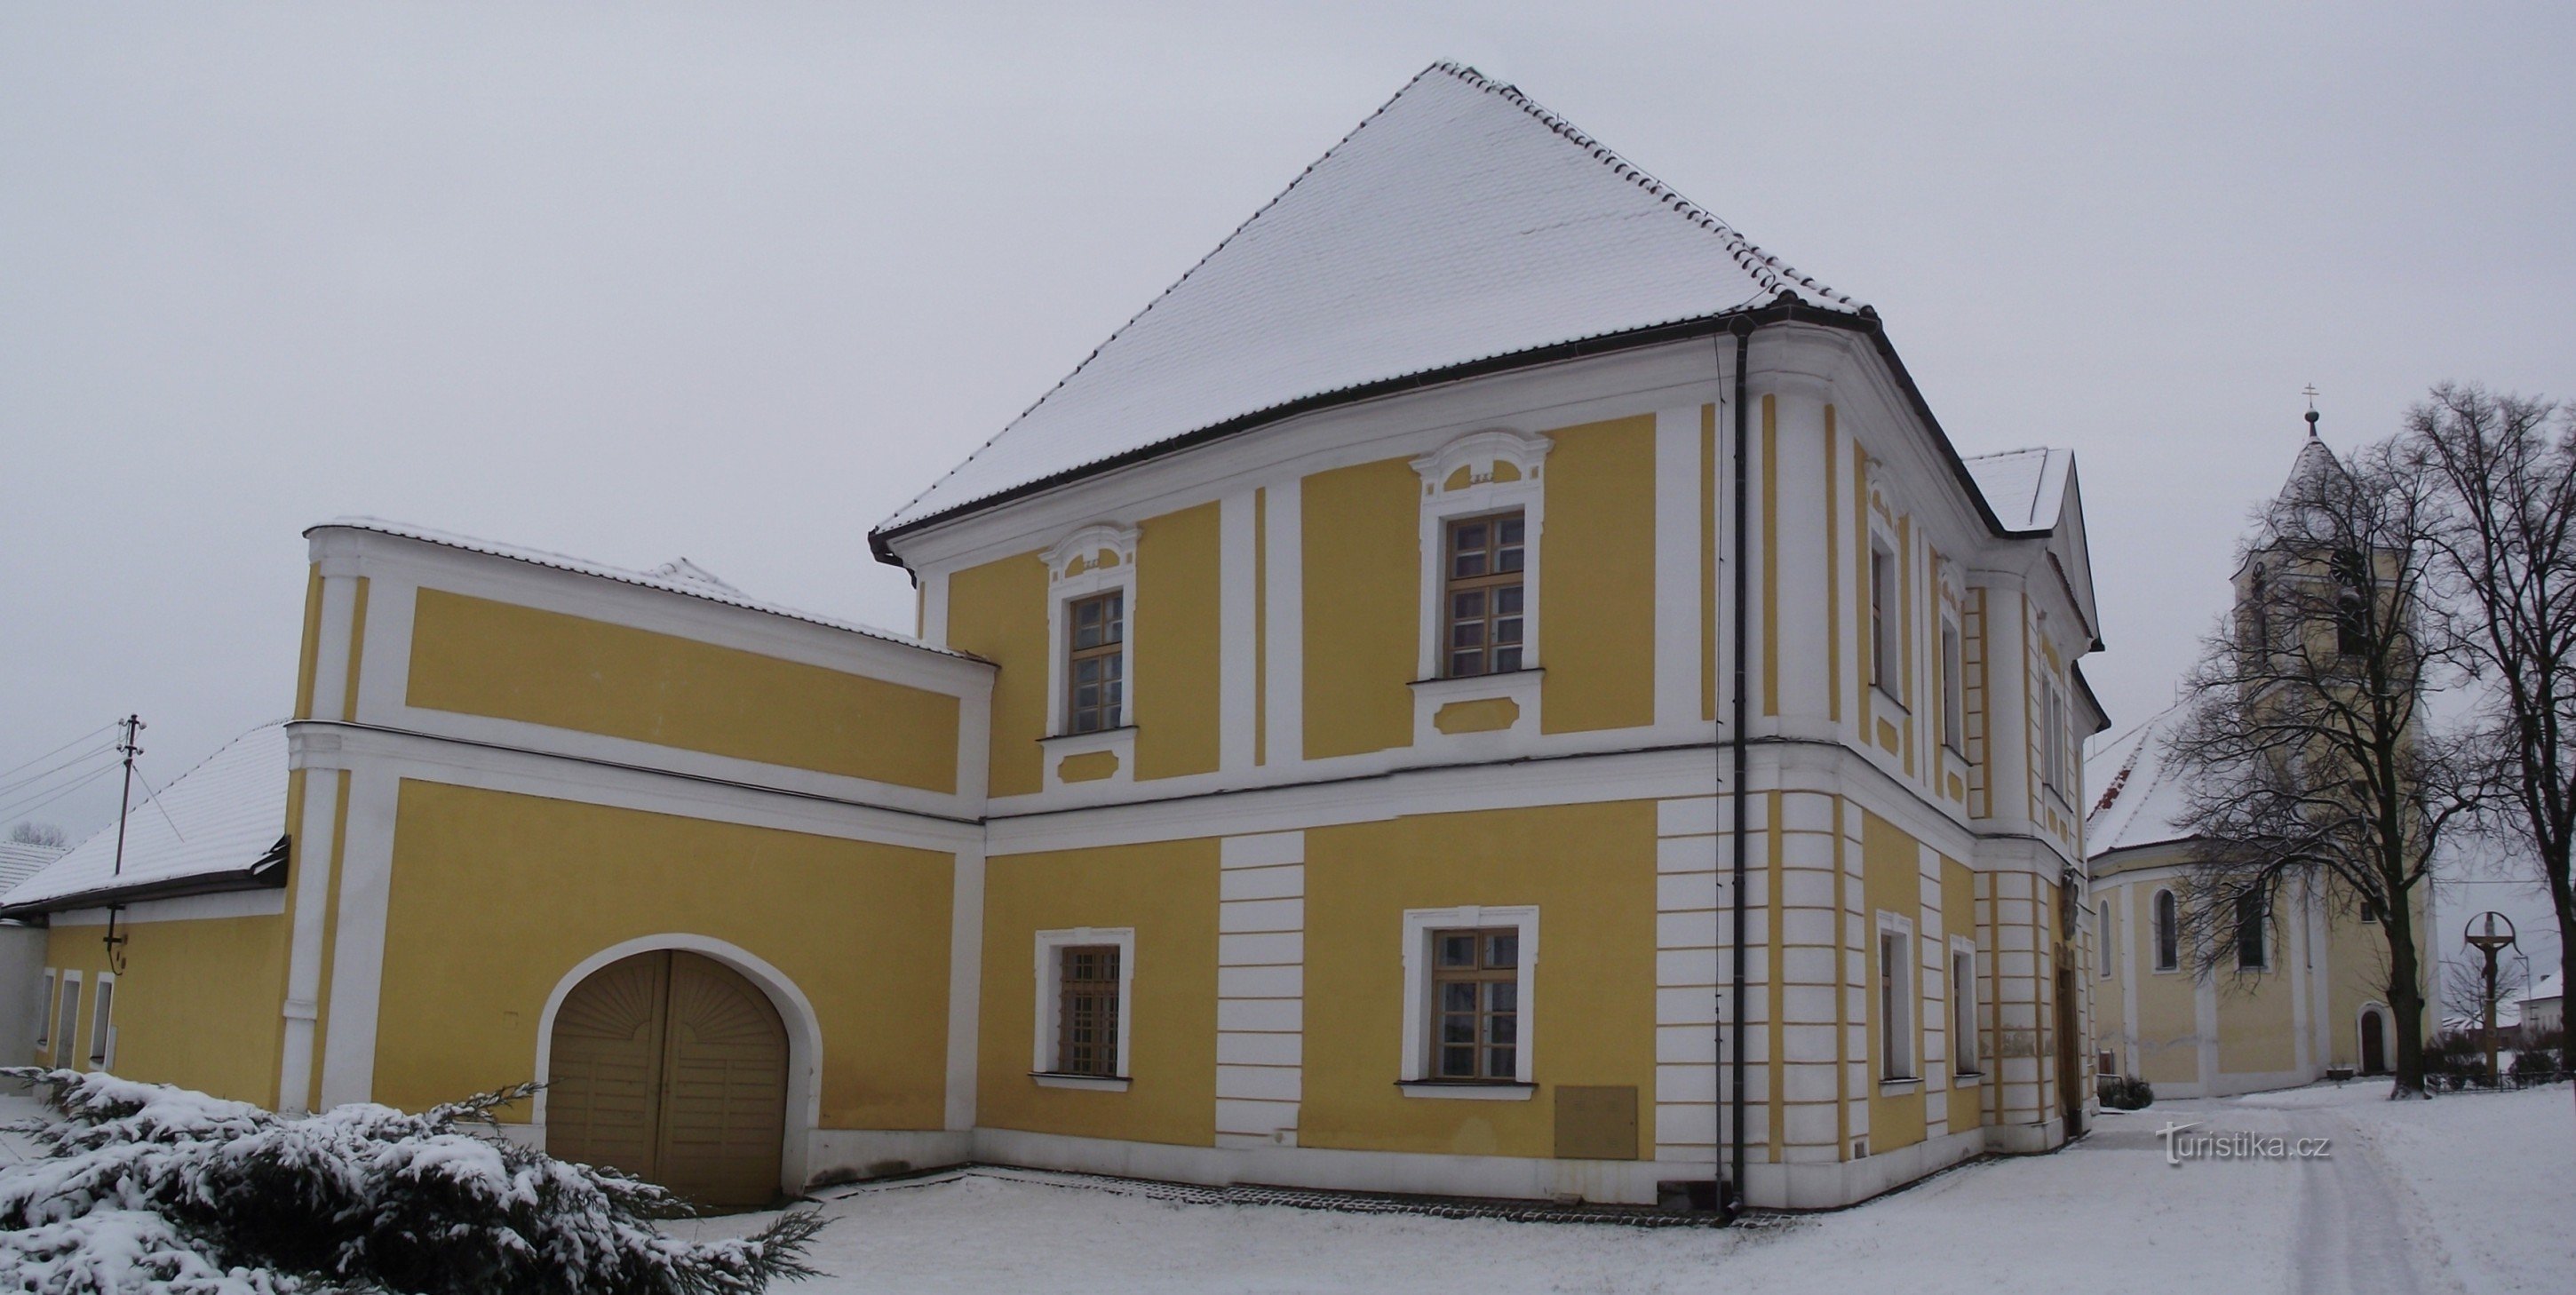 Cetkovice – župnišče, imenovano dvorec (ali baročni dvorec, ki je služil kot župnišče?)